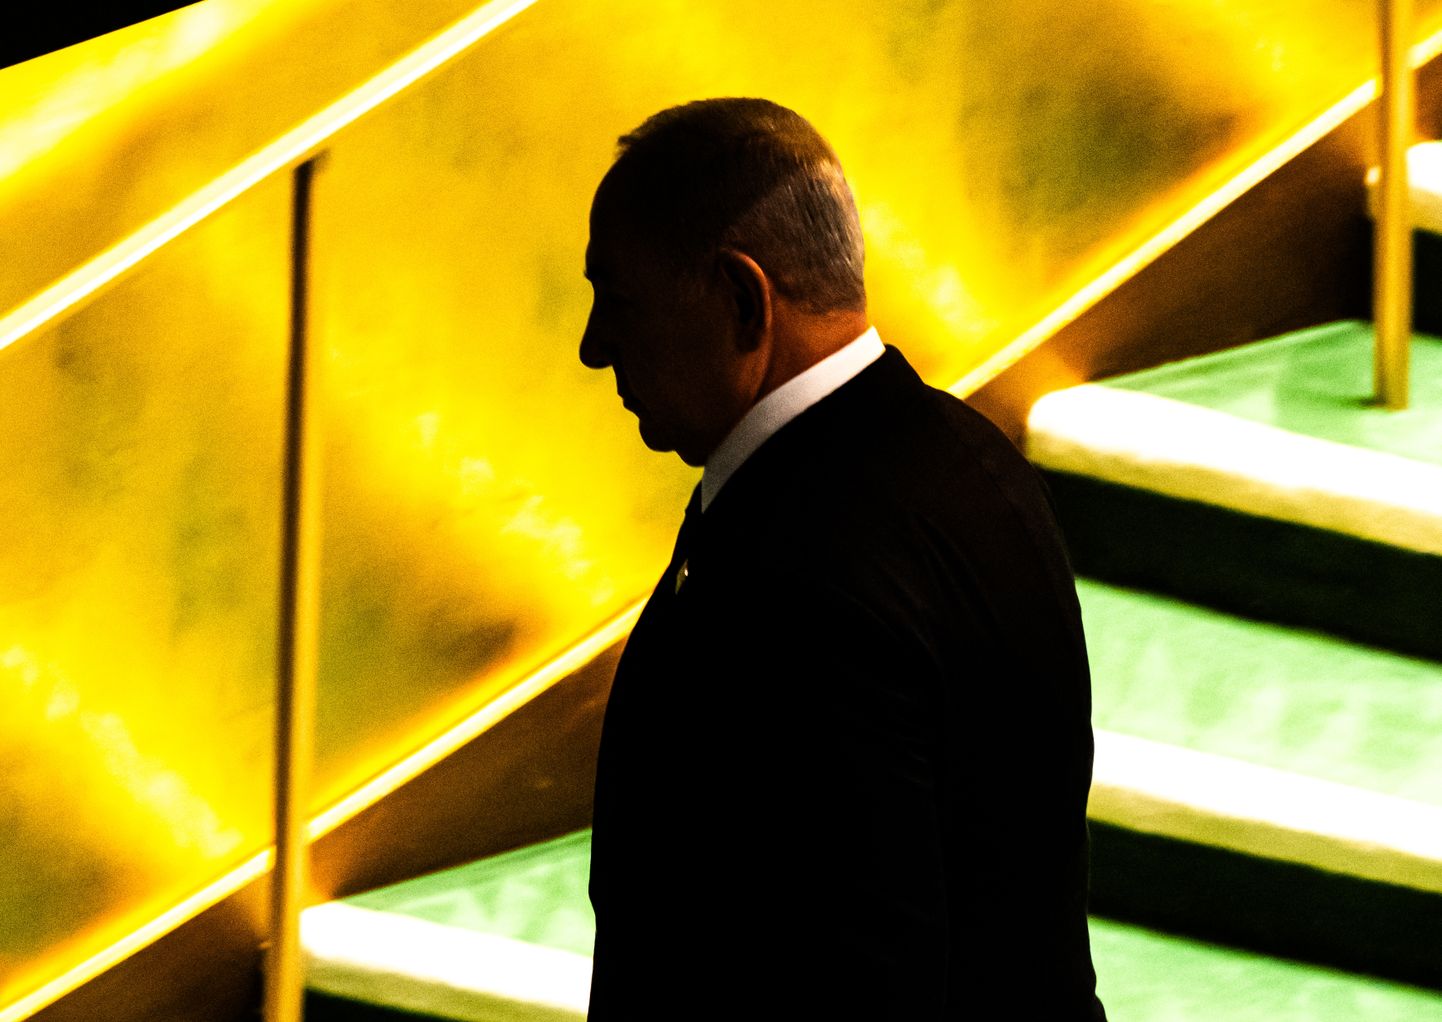 Izraēlas premjers Benjamins Netanjahu